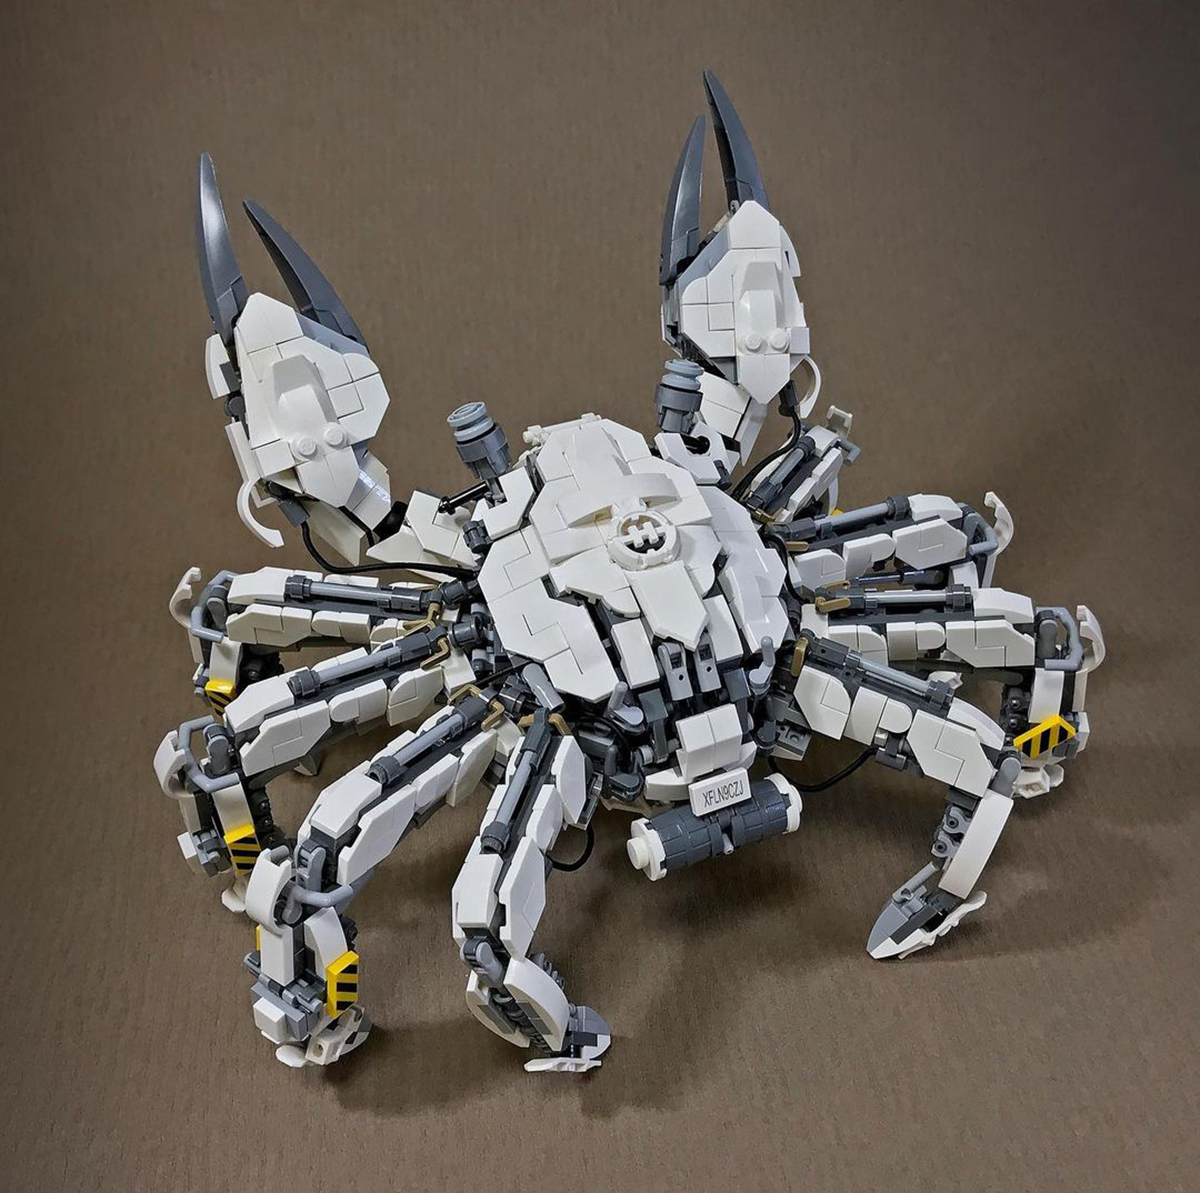 animaux-insectes-robots-lego-mitsuru-nikaido-5